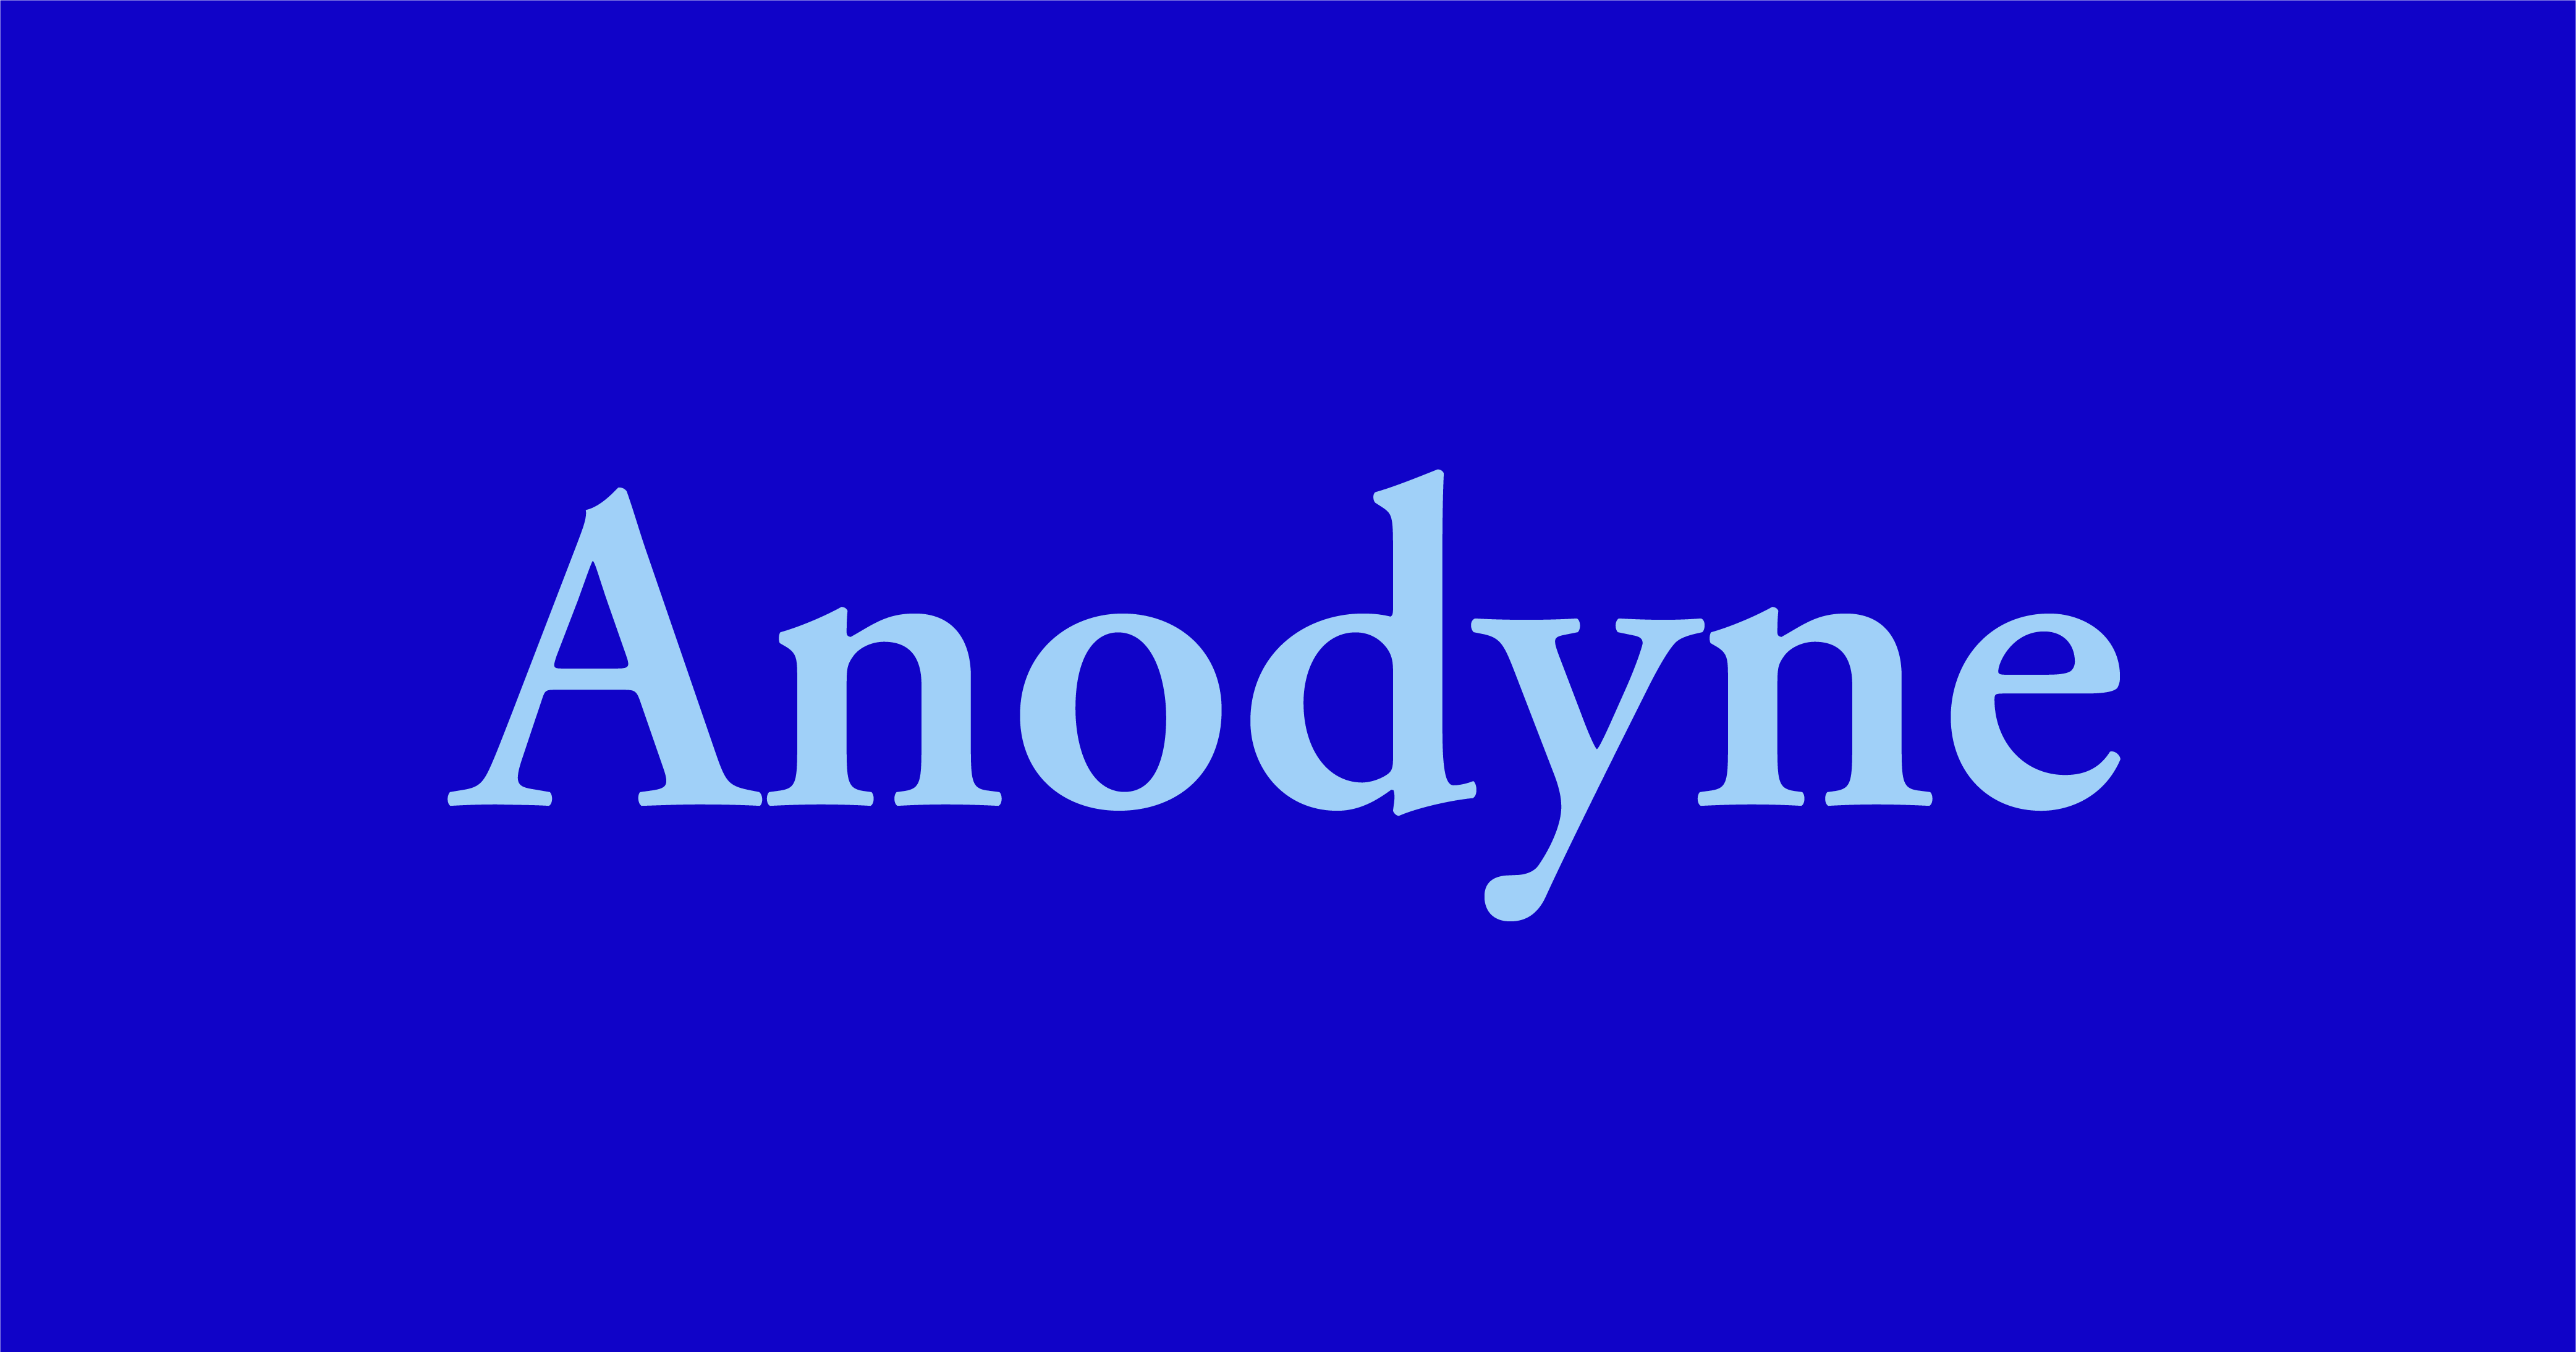 Anodyne - Word Daily